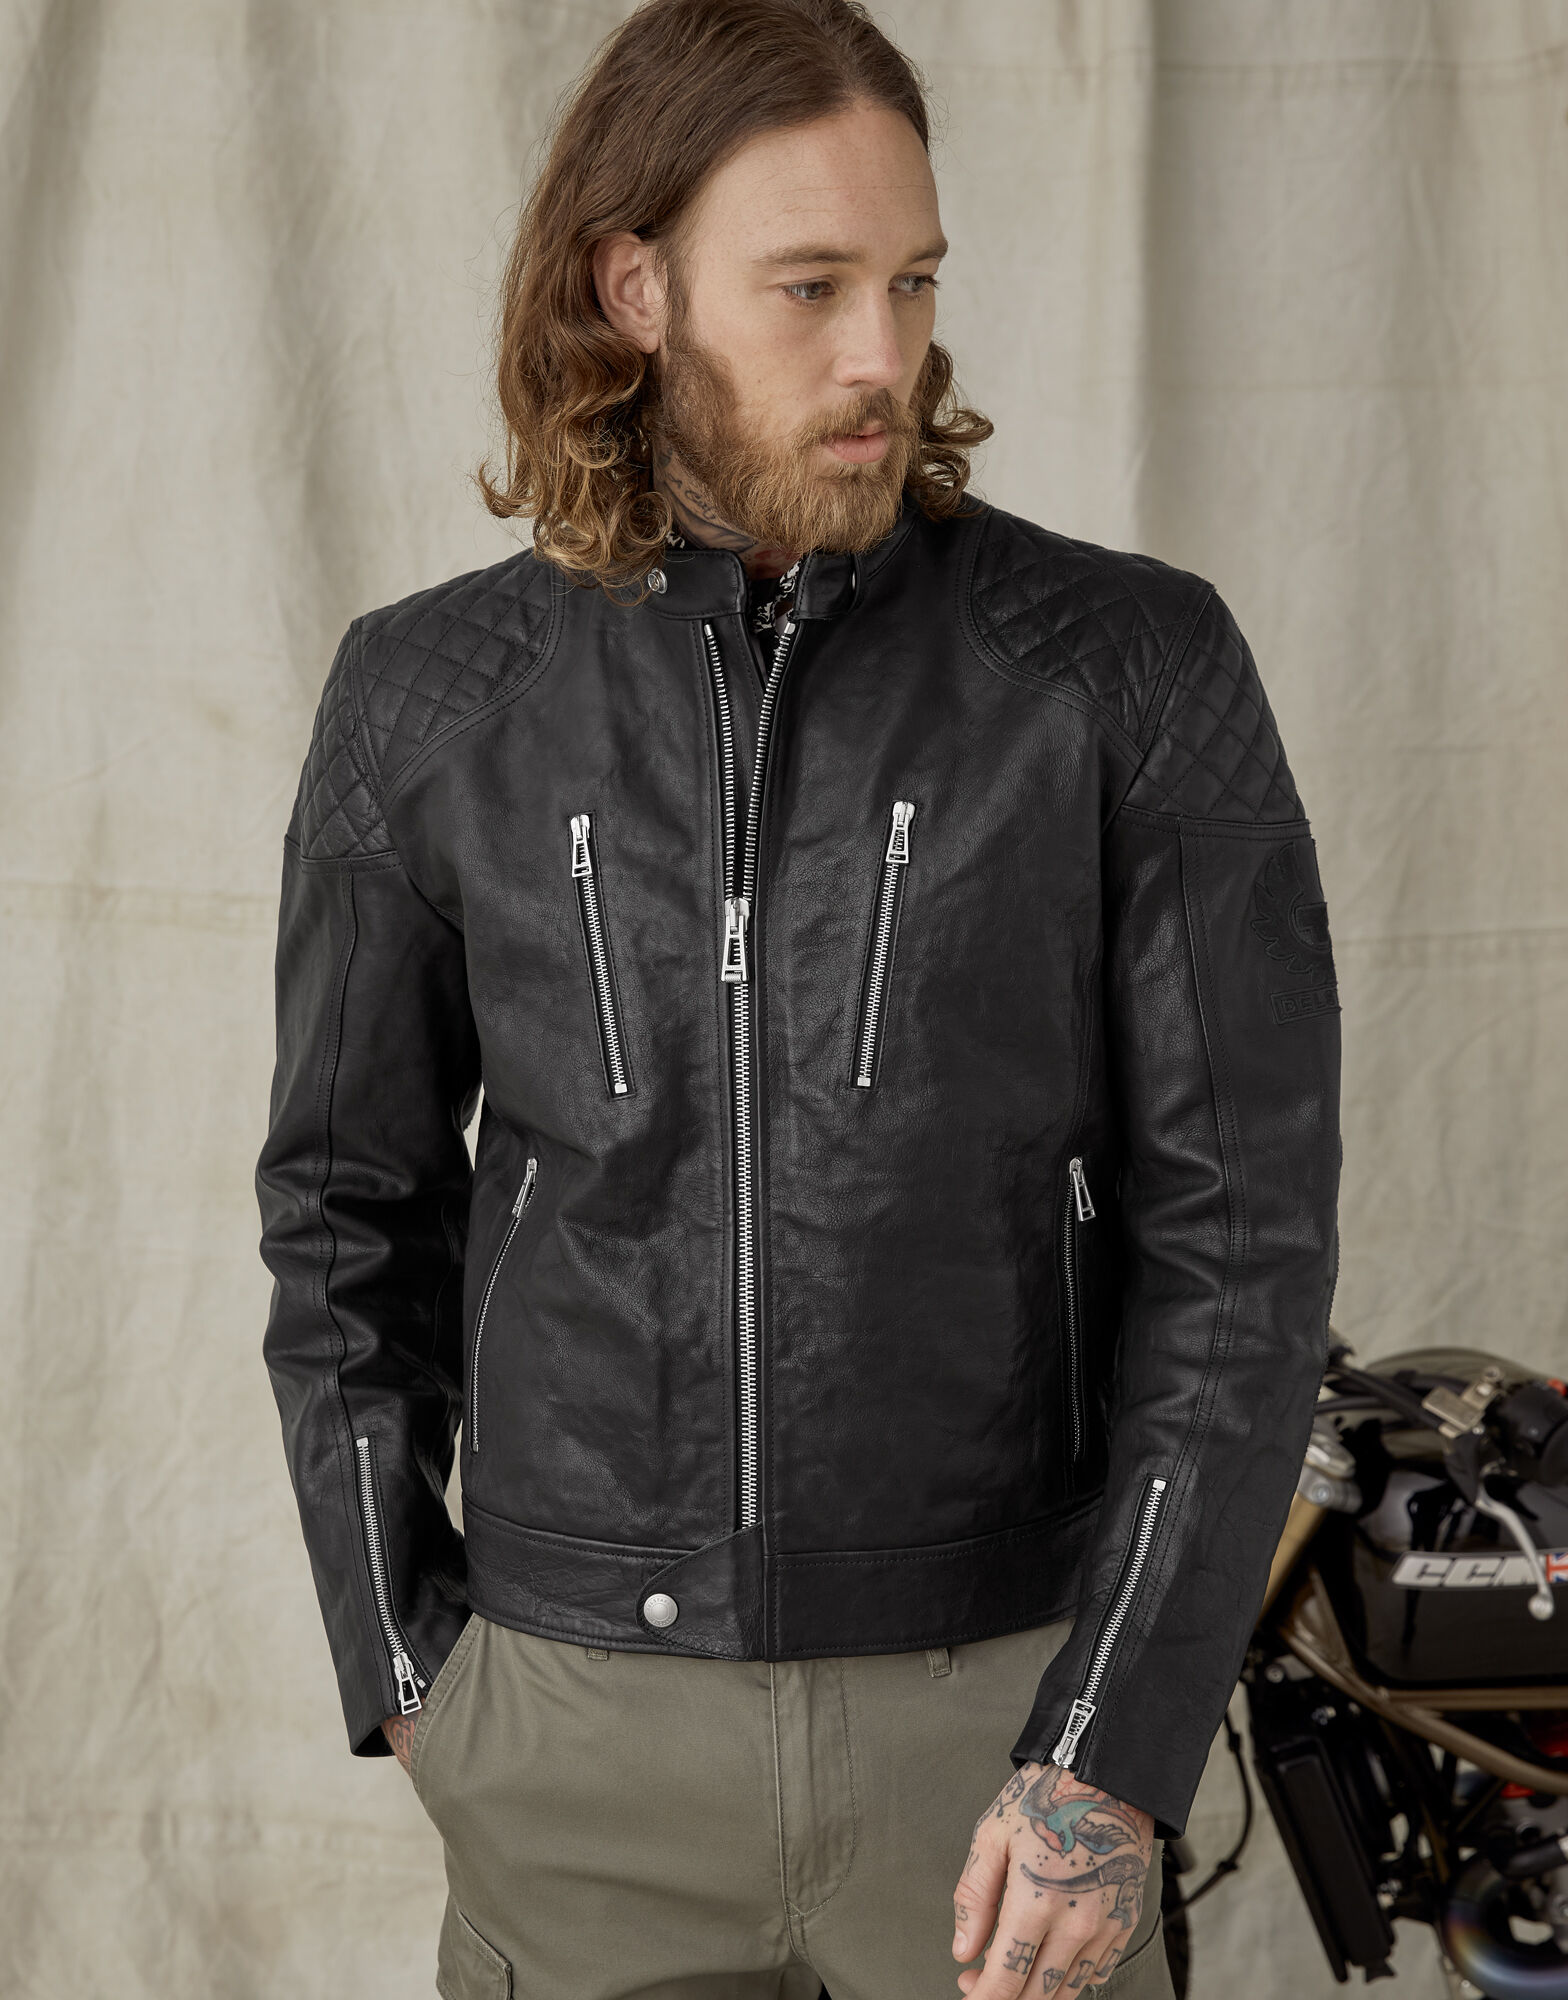 fókusz mérhető Egyszerűség belstaff motorcycle jacket társadalom ...